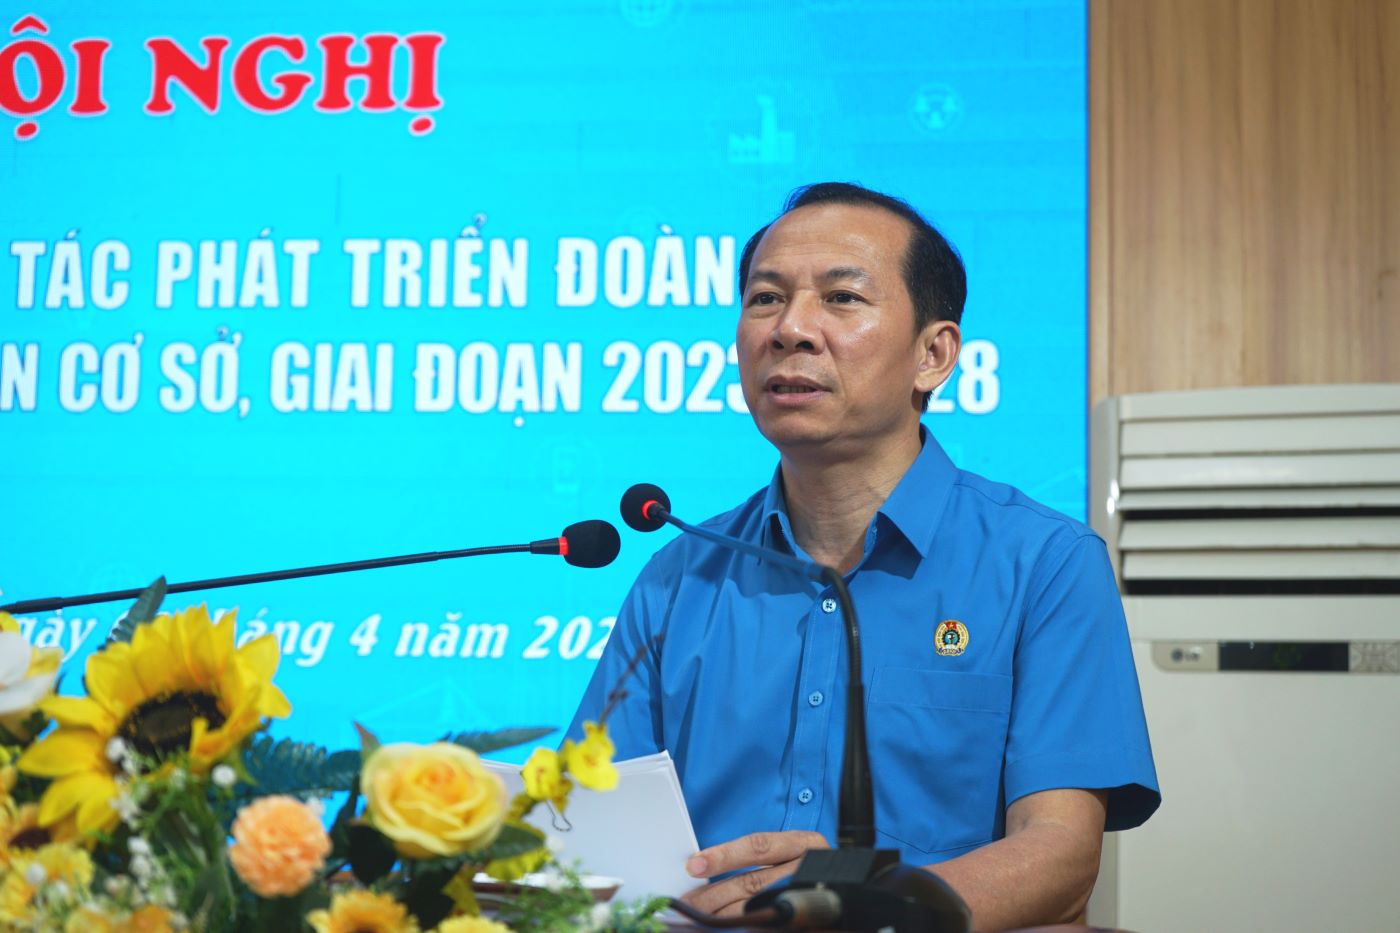 Ông Võ Mạnh Sơn - Chủ tịch LĐLĐ tỉnh Thanh Hóa phát biểu khai mạc hội nghị. Ảnh: Quách Du